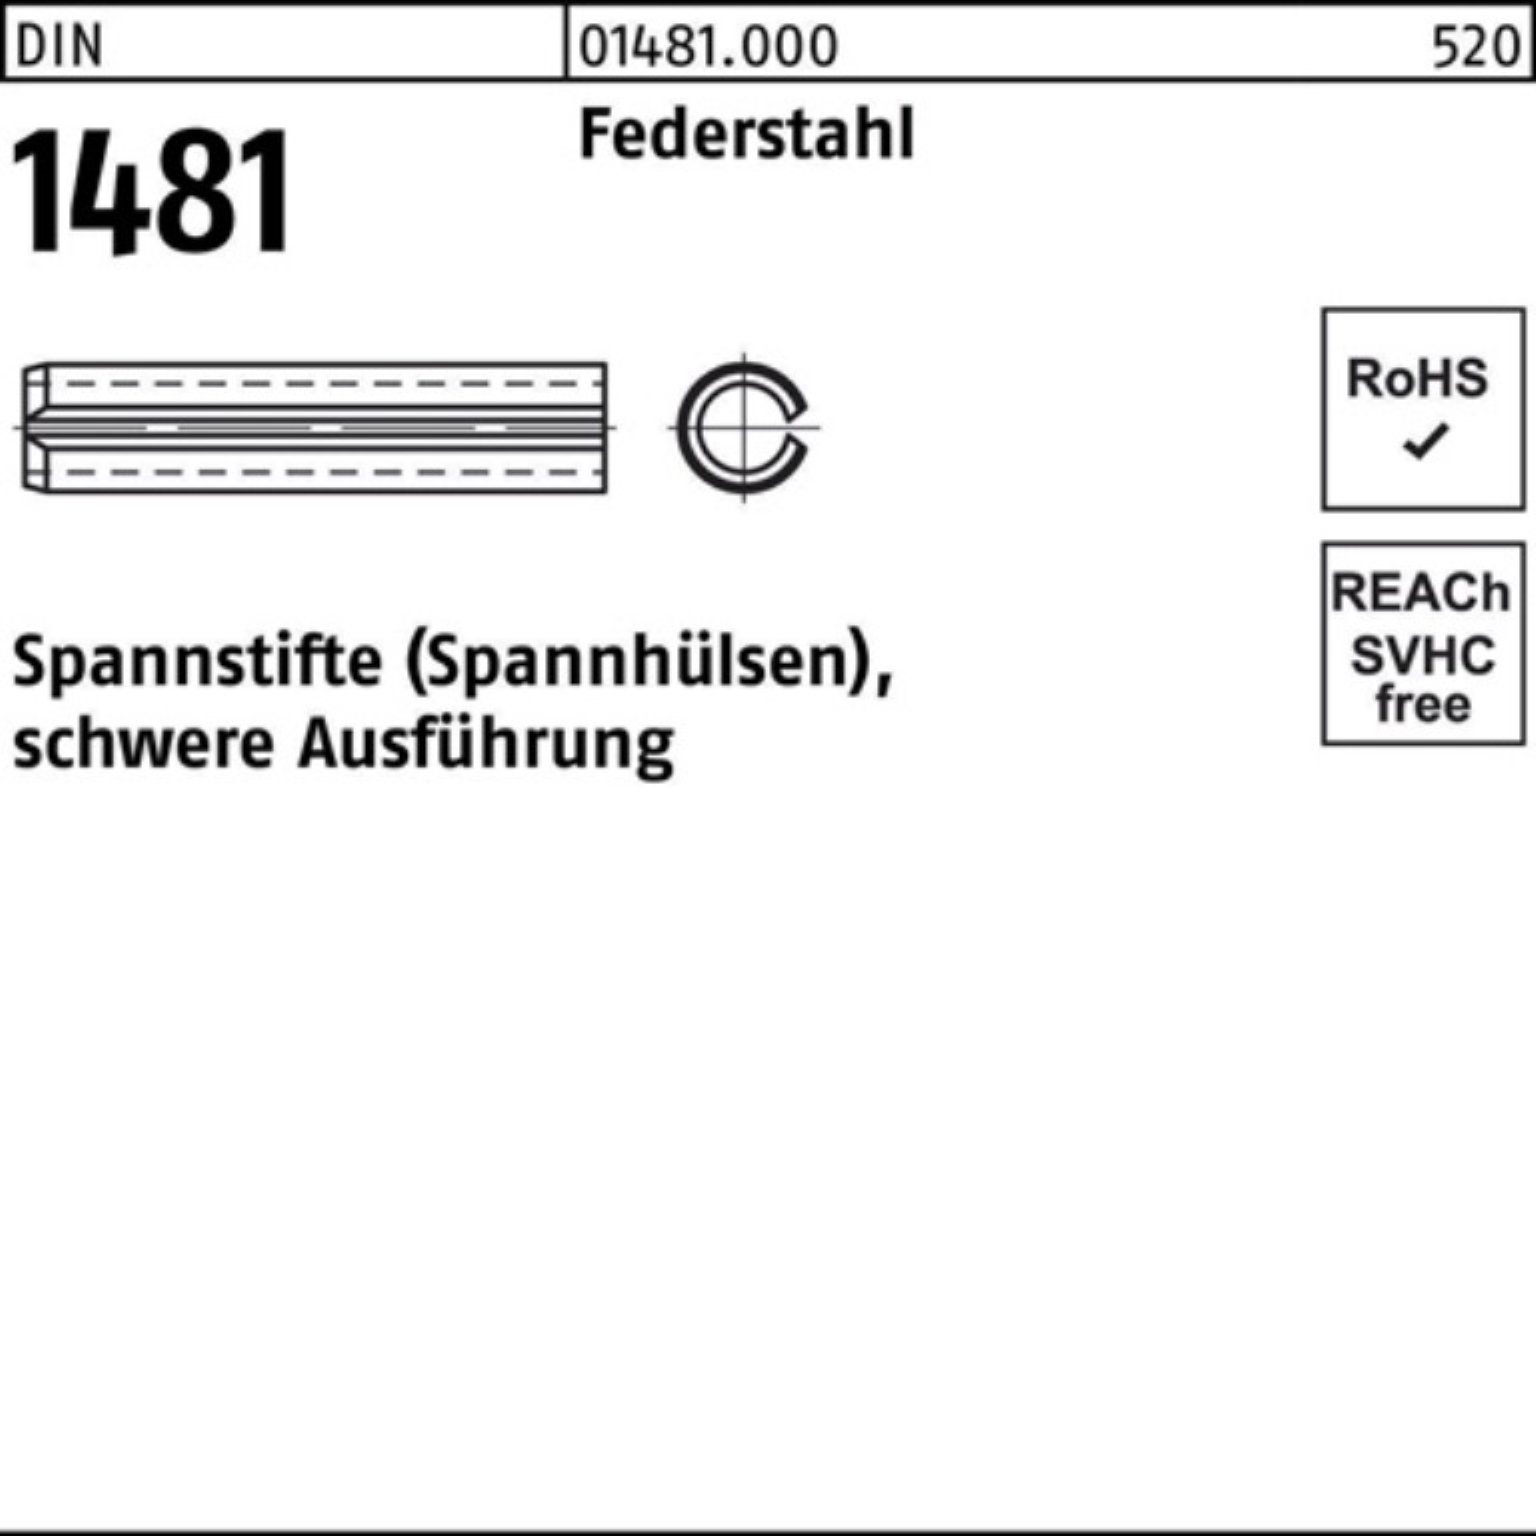 14x Spannstift Reyher Spannstift Federstahl 1481 Ausführung schwere Pack 24 DIN 2 100er